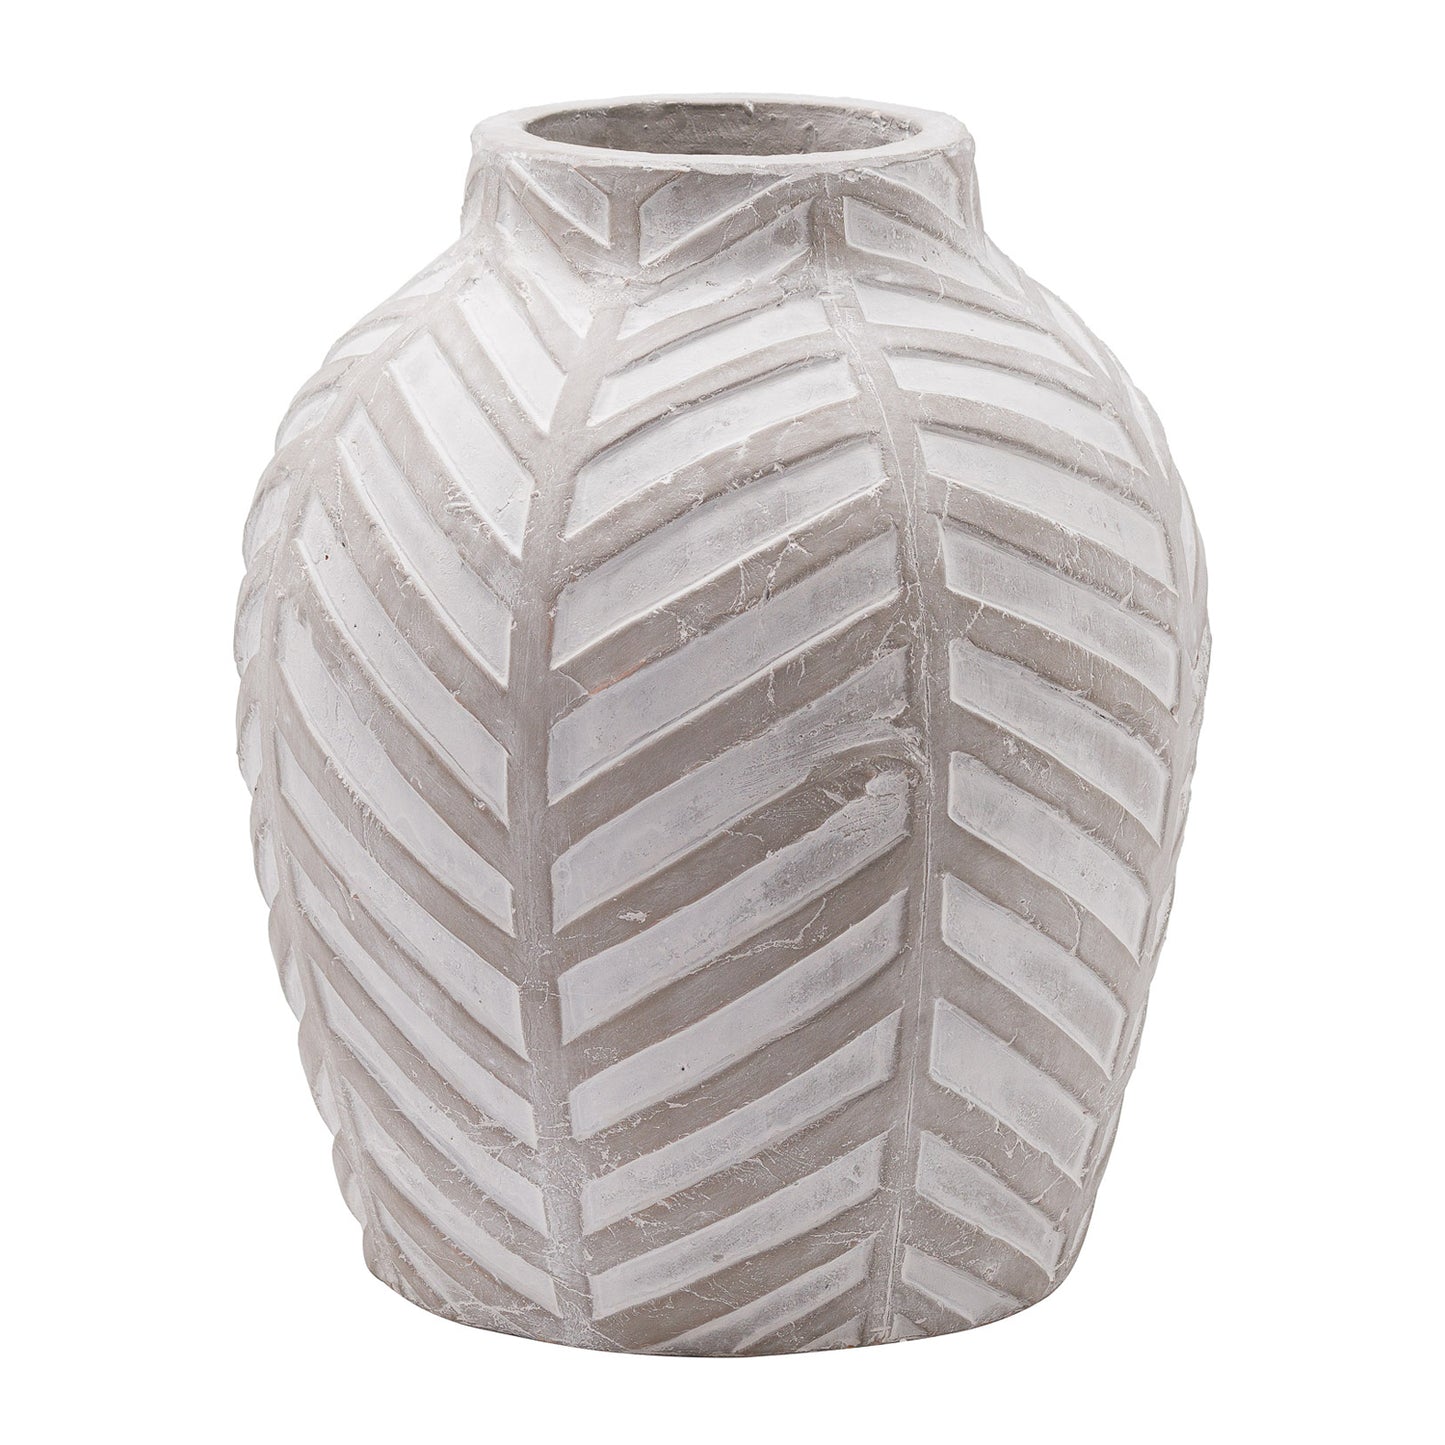 Bloomville stone vase